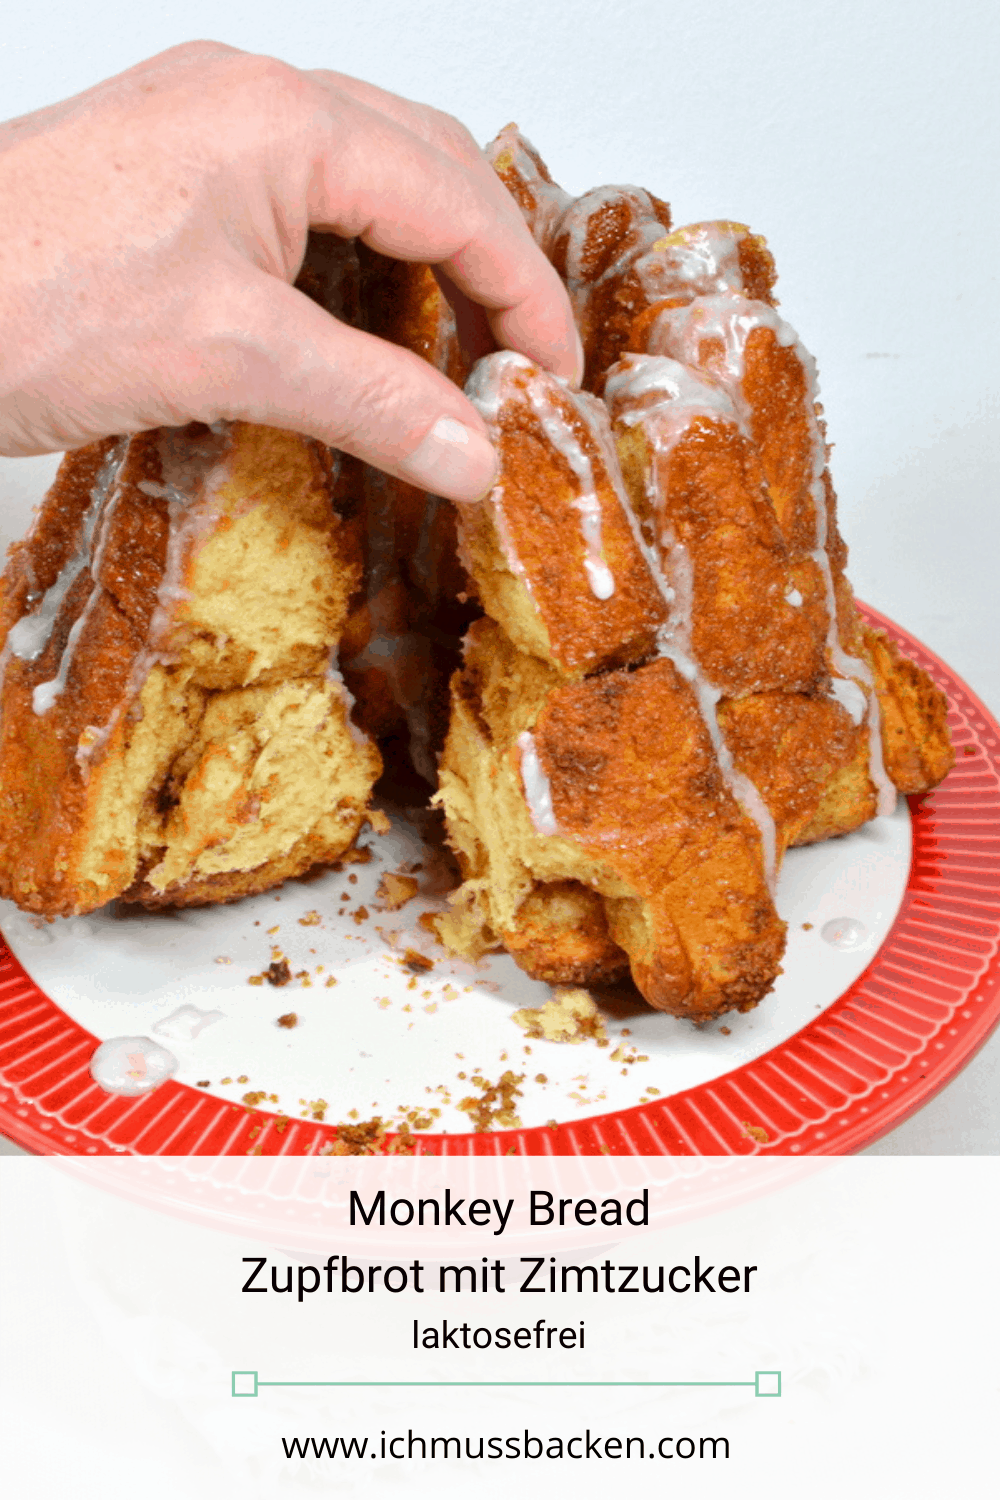 Monkey Bread - Zupfbrot mit Zimtzucker